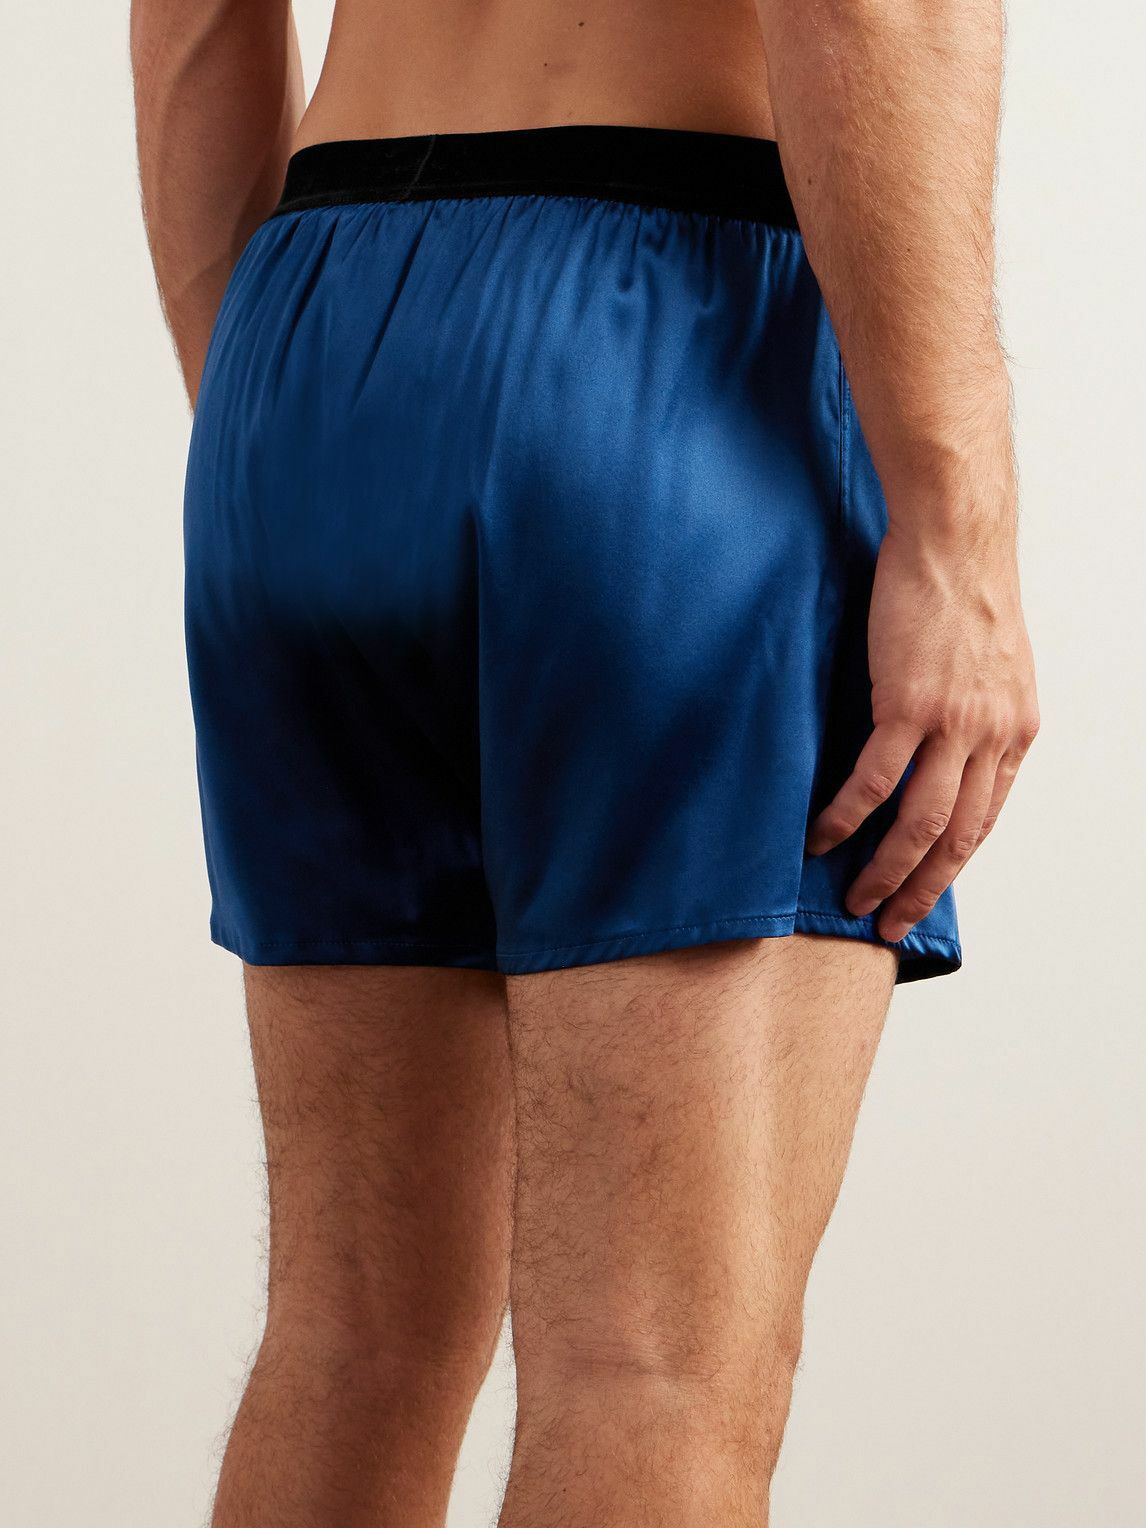 TOM FORD - Velvet-Trimmed Stretch-Silk Satin Boxer Shorts - Blue TOM FORD